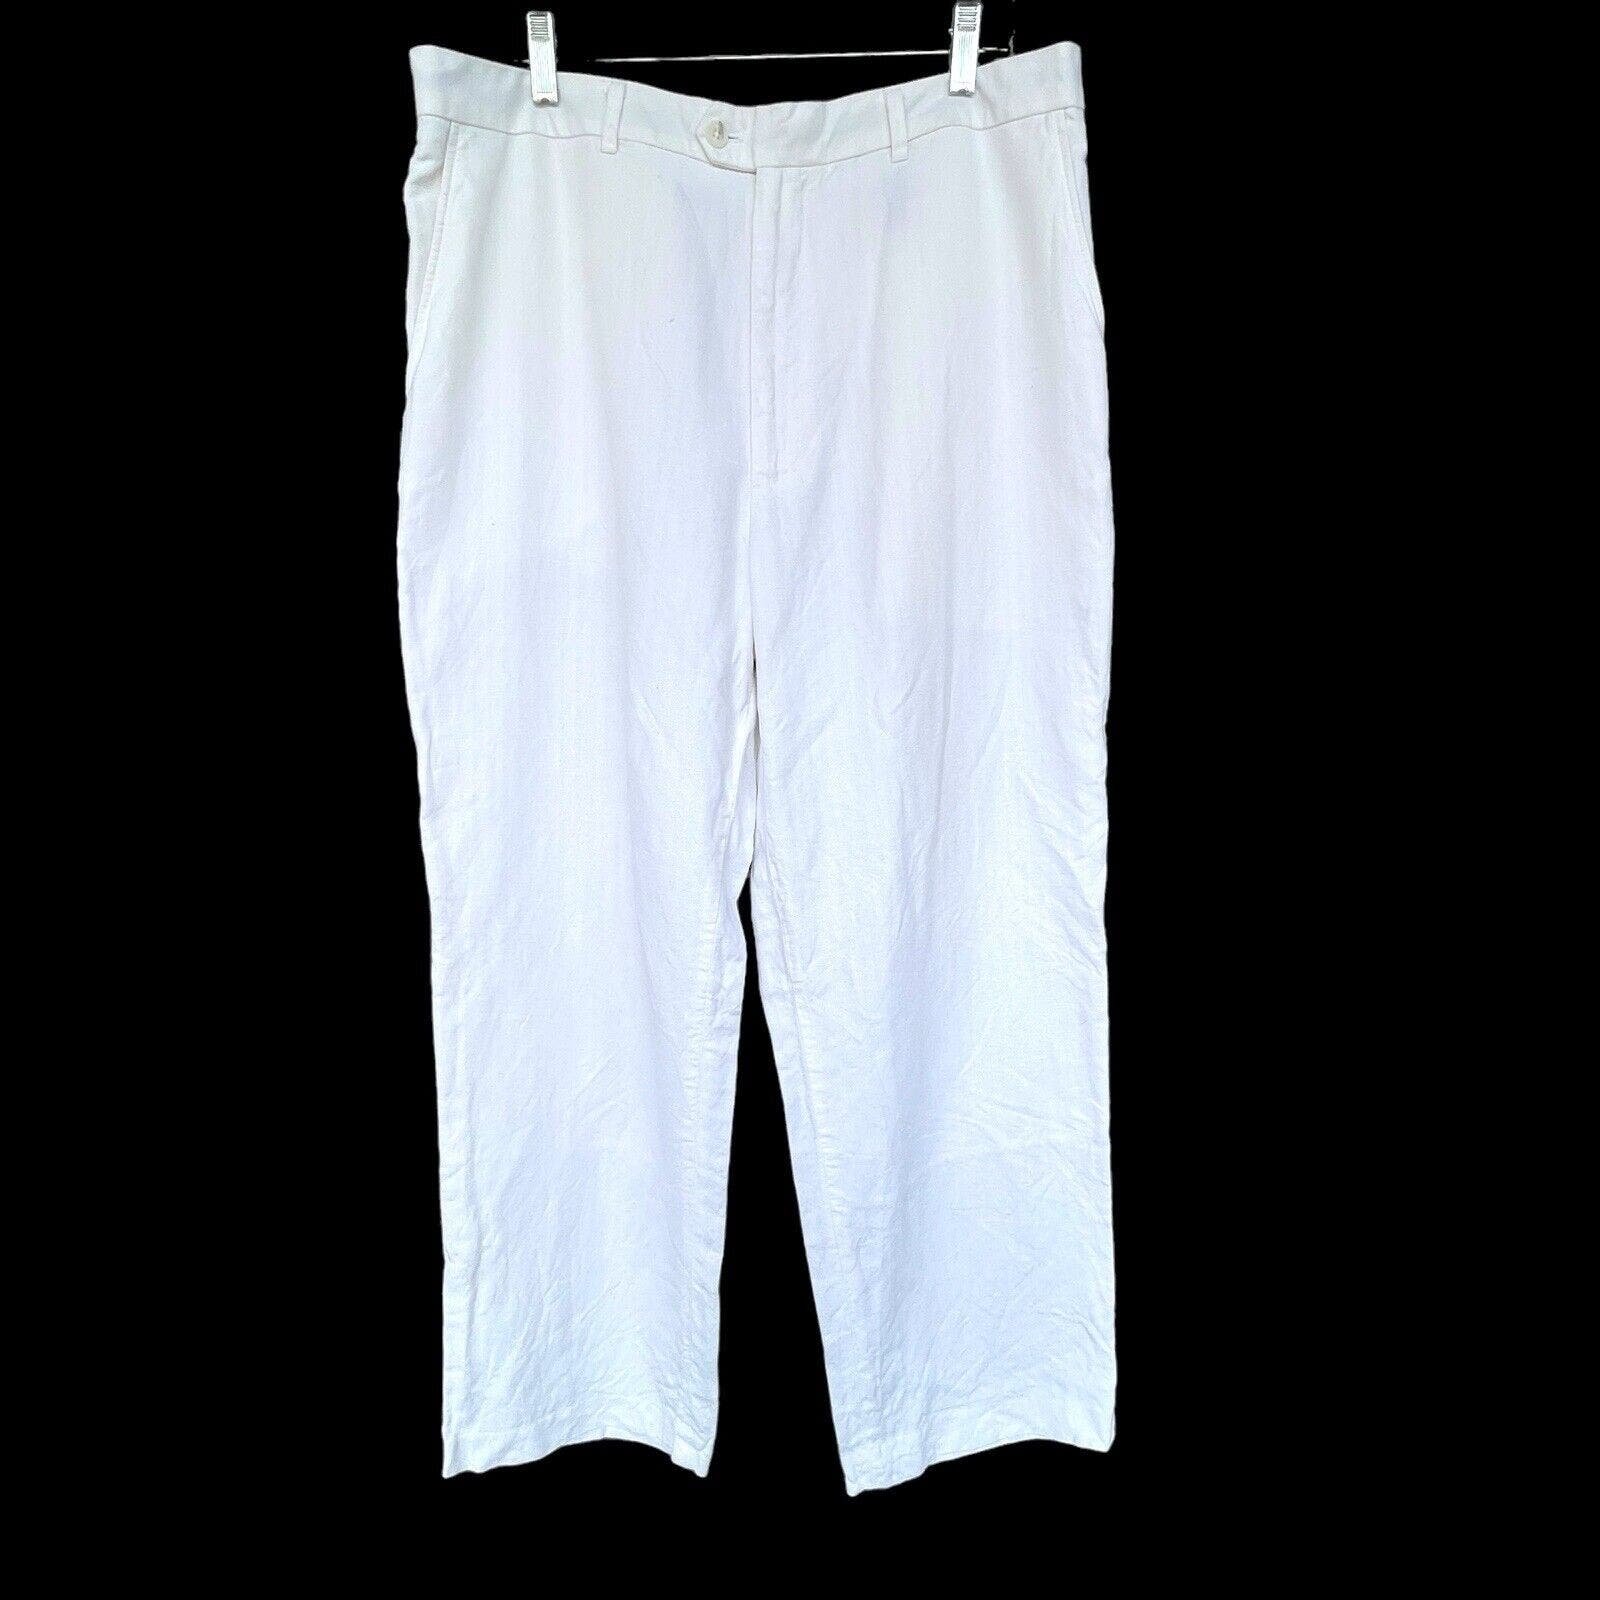 Classic Claiborne Pants Womens Size 38/32 White Linen B